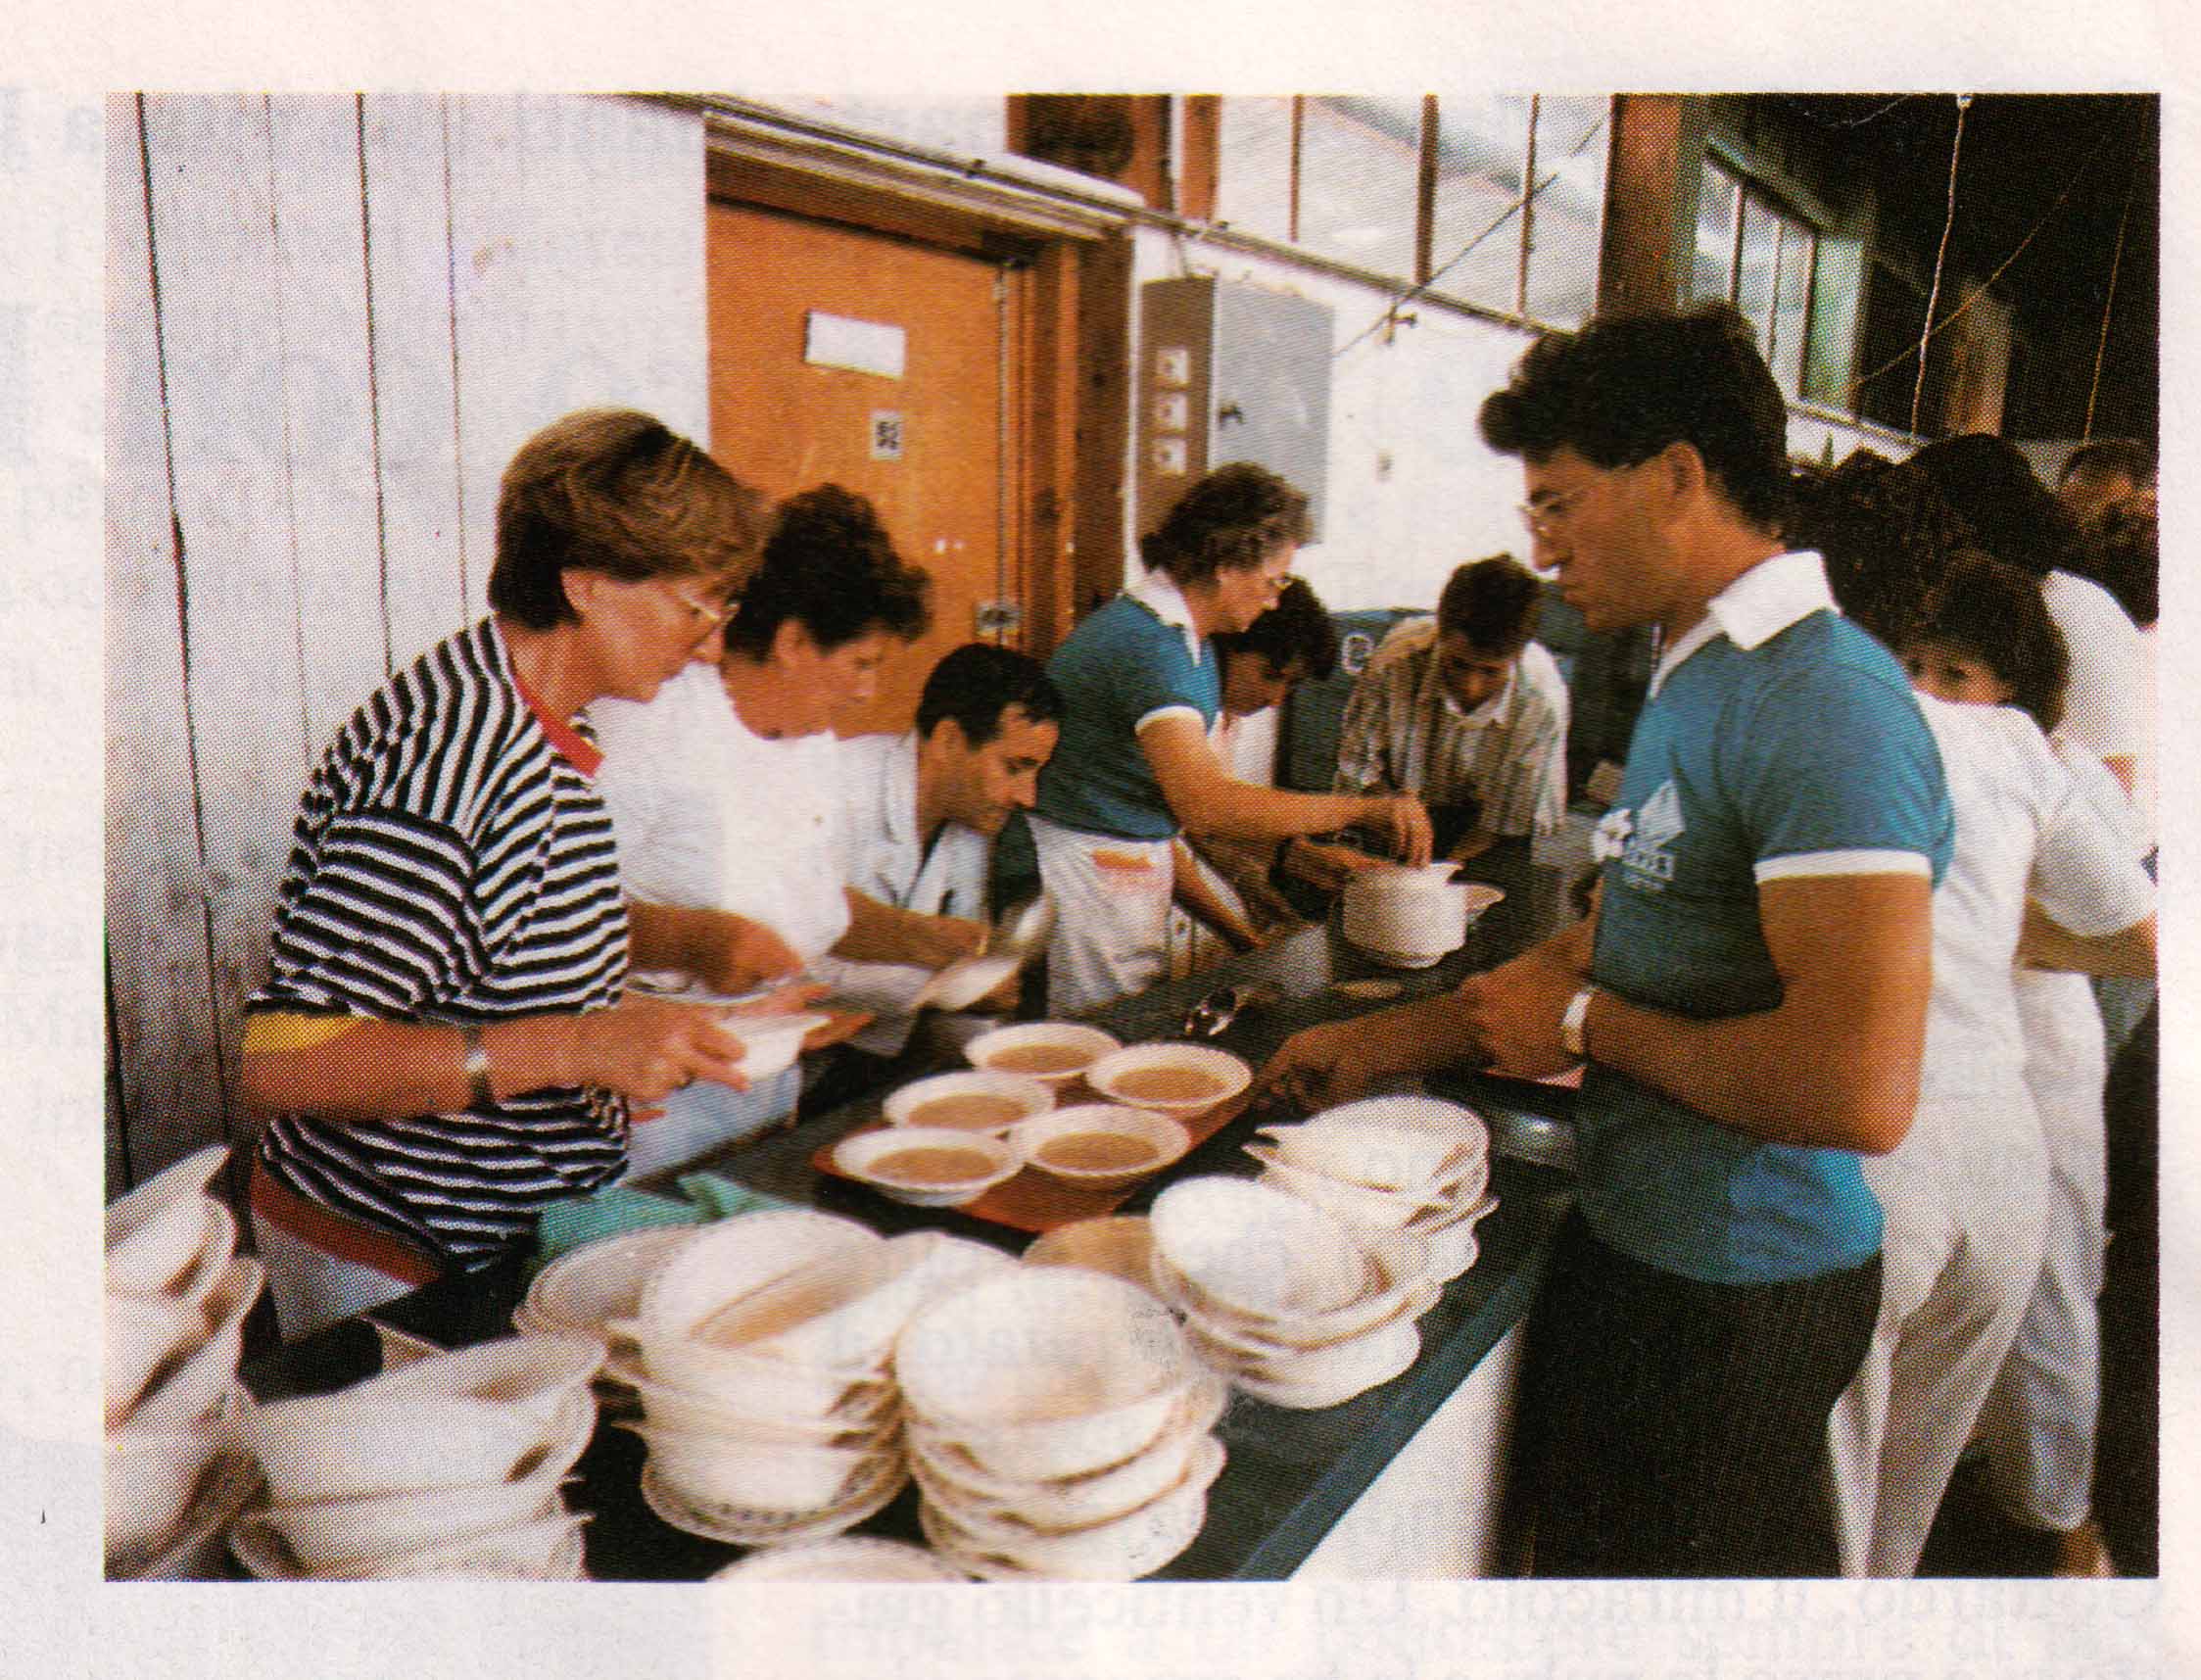 Le mogli e i familiari dei nostri emigrati che hanno preparato e servito il pranzo